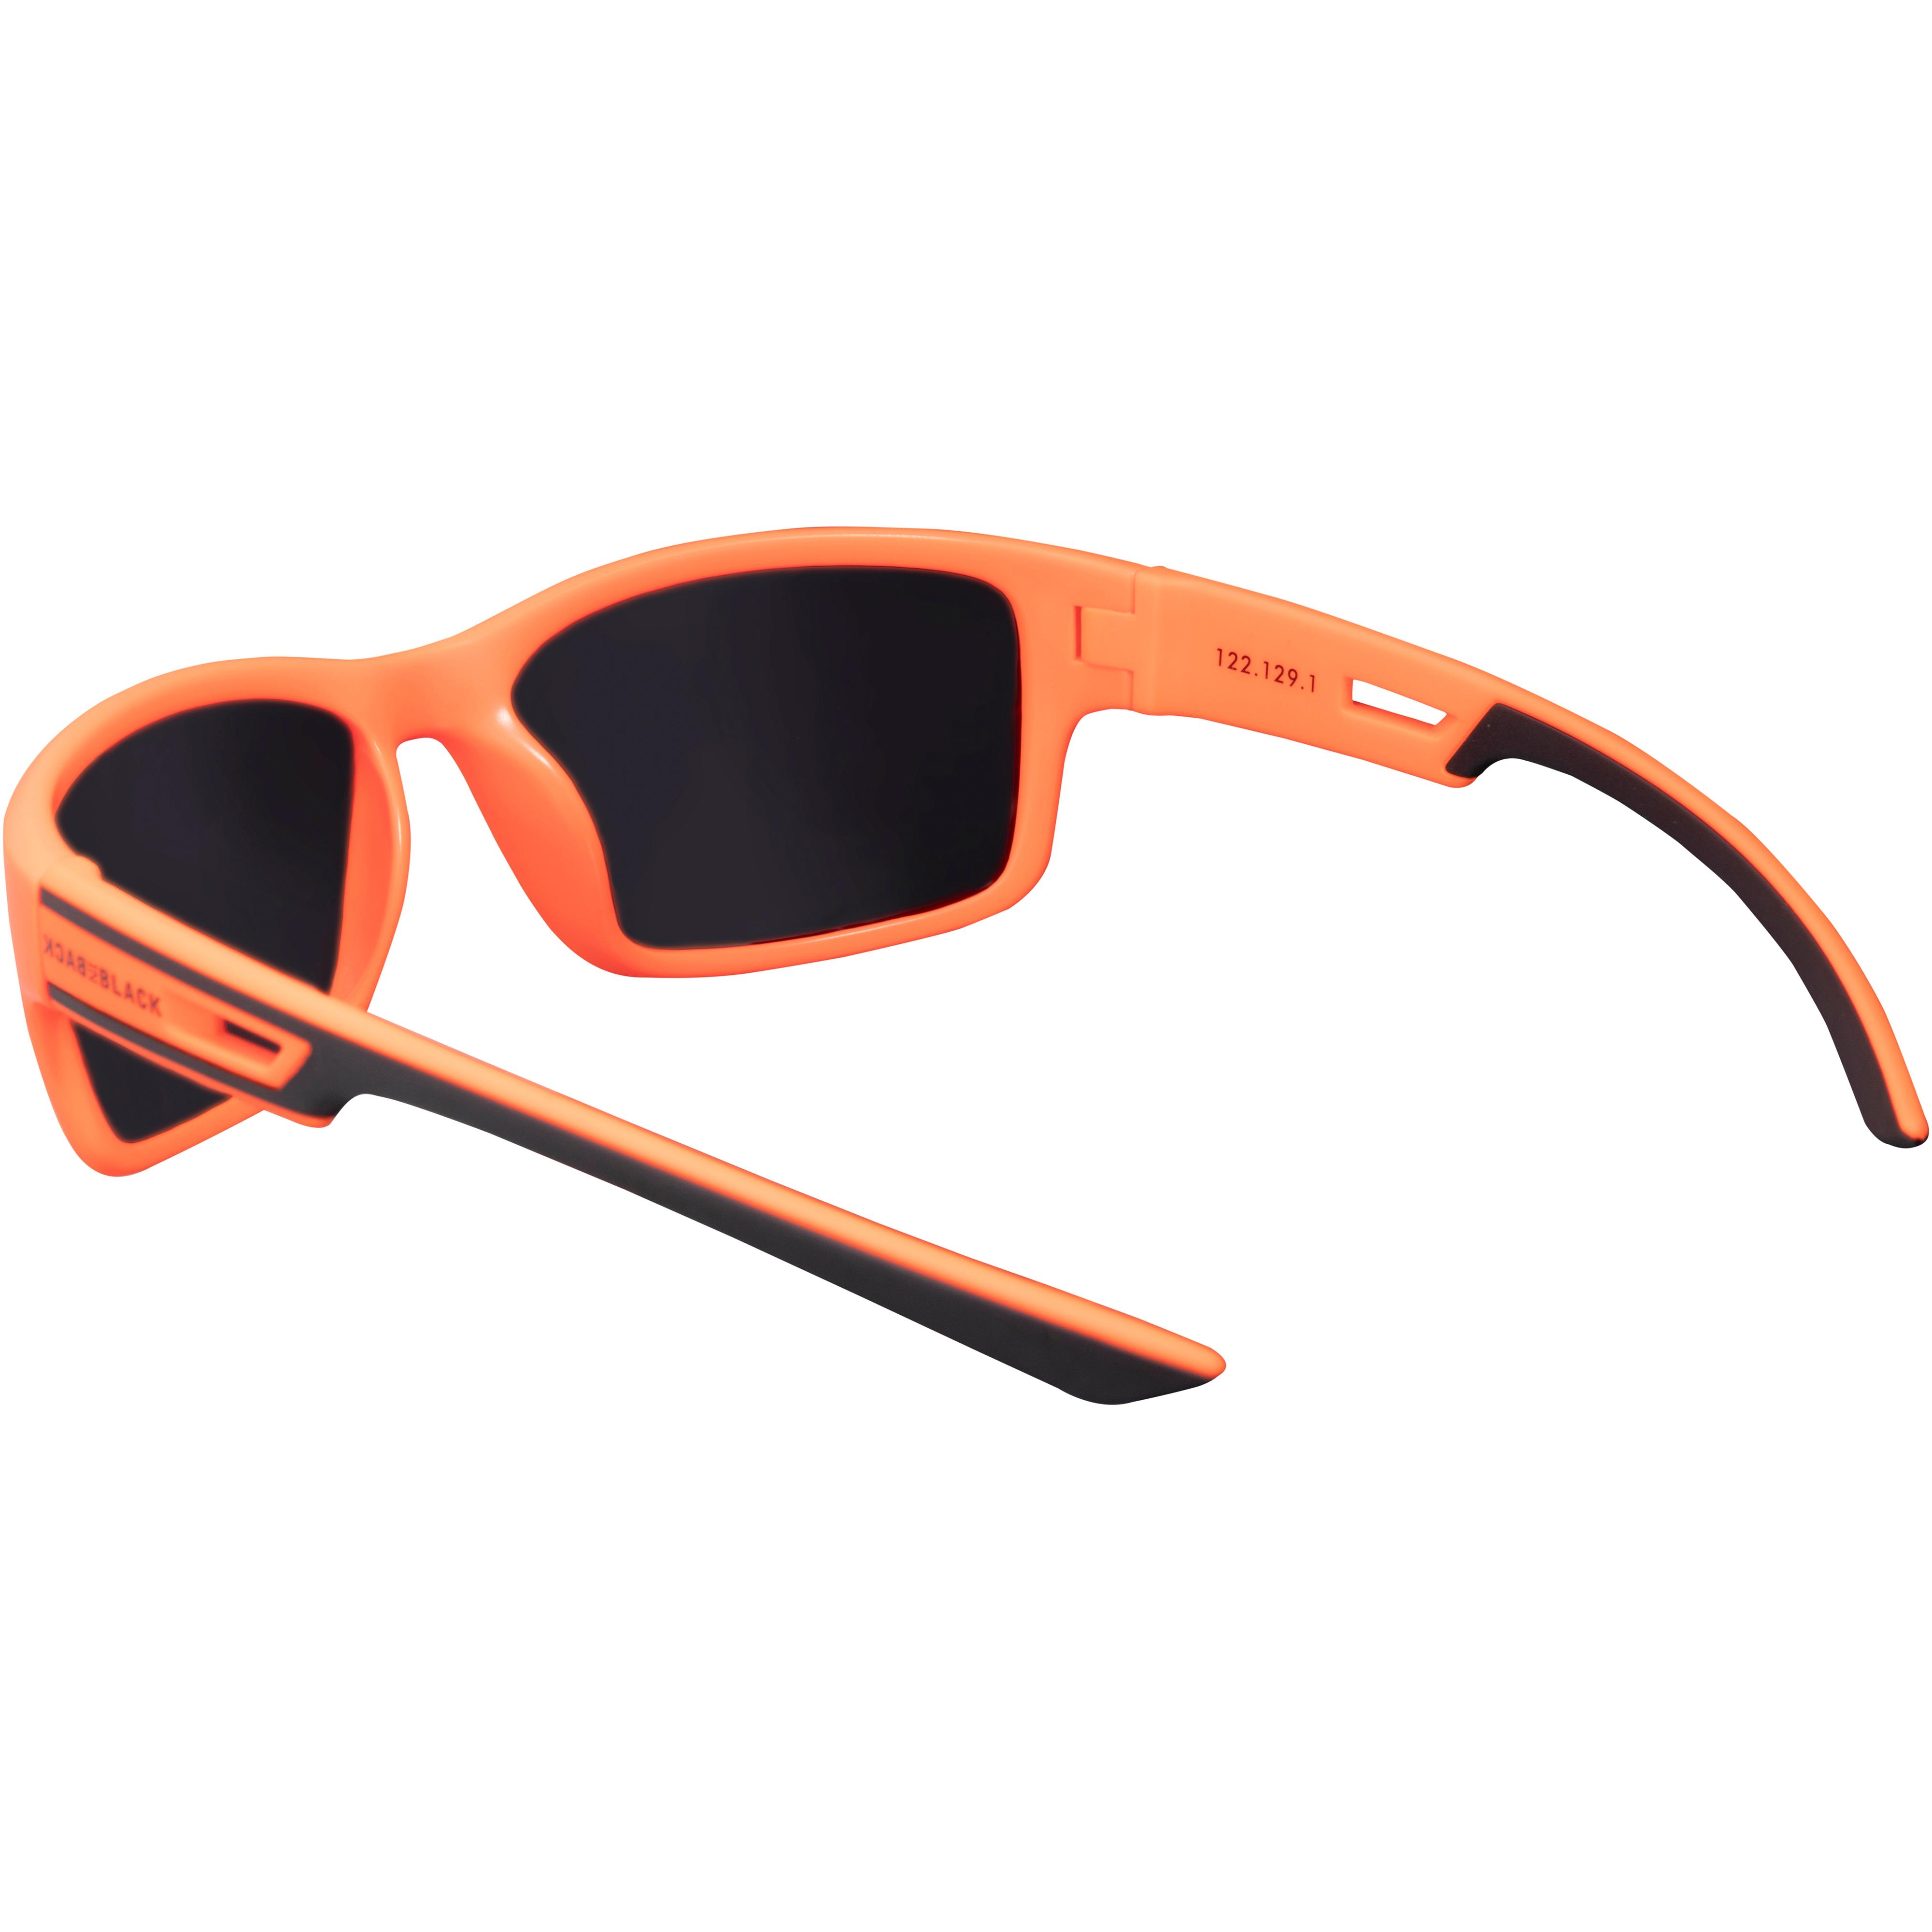 Sonnenbrille in SportScheck orange-grey Back neon Black im Shop kaufen von matt Online